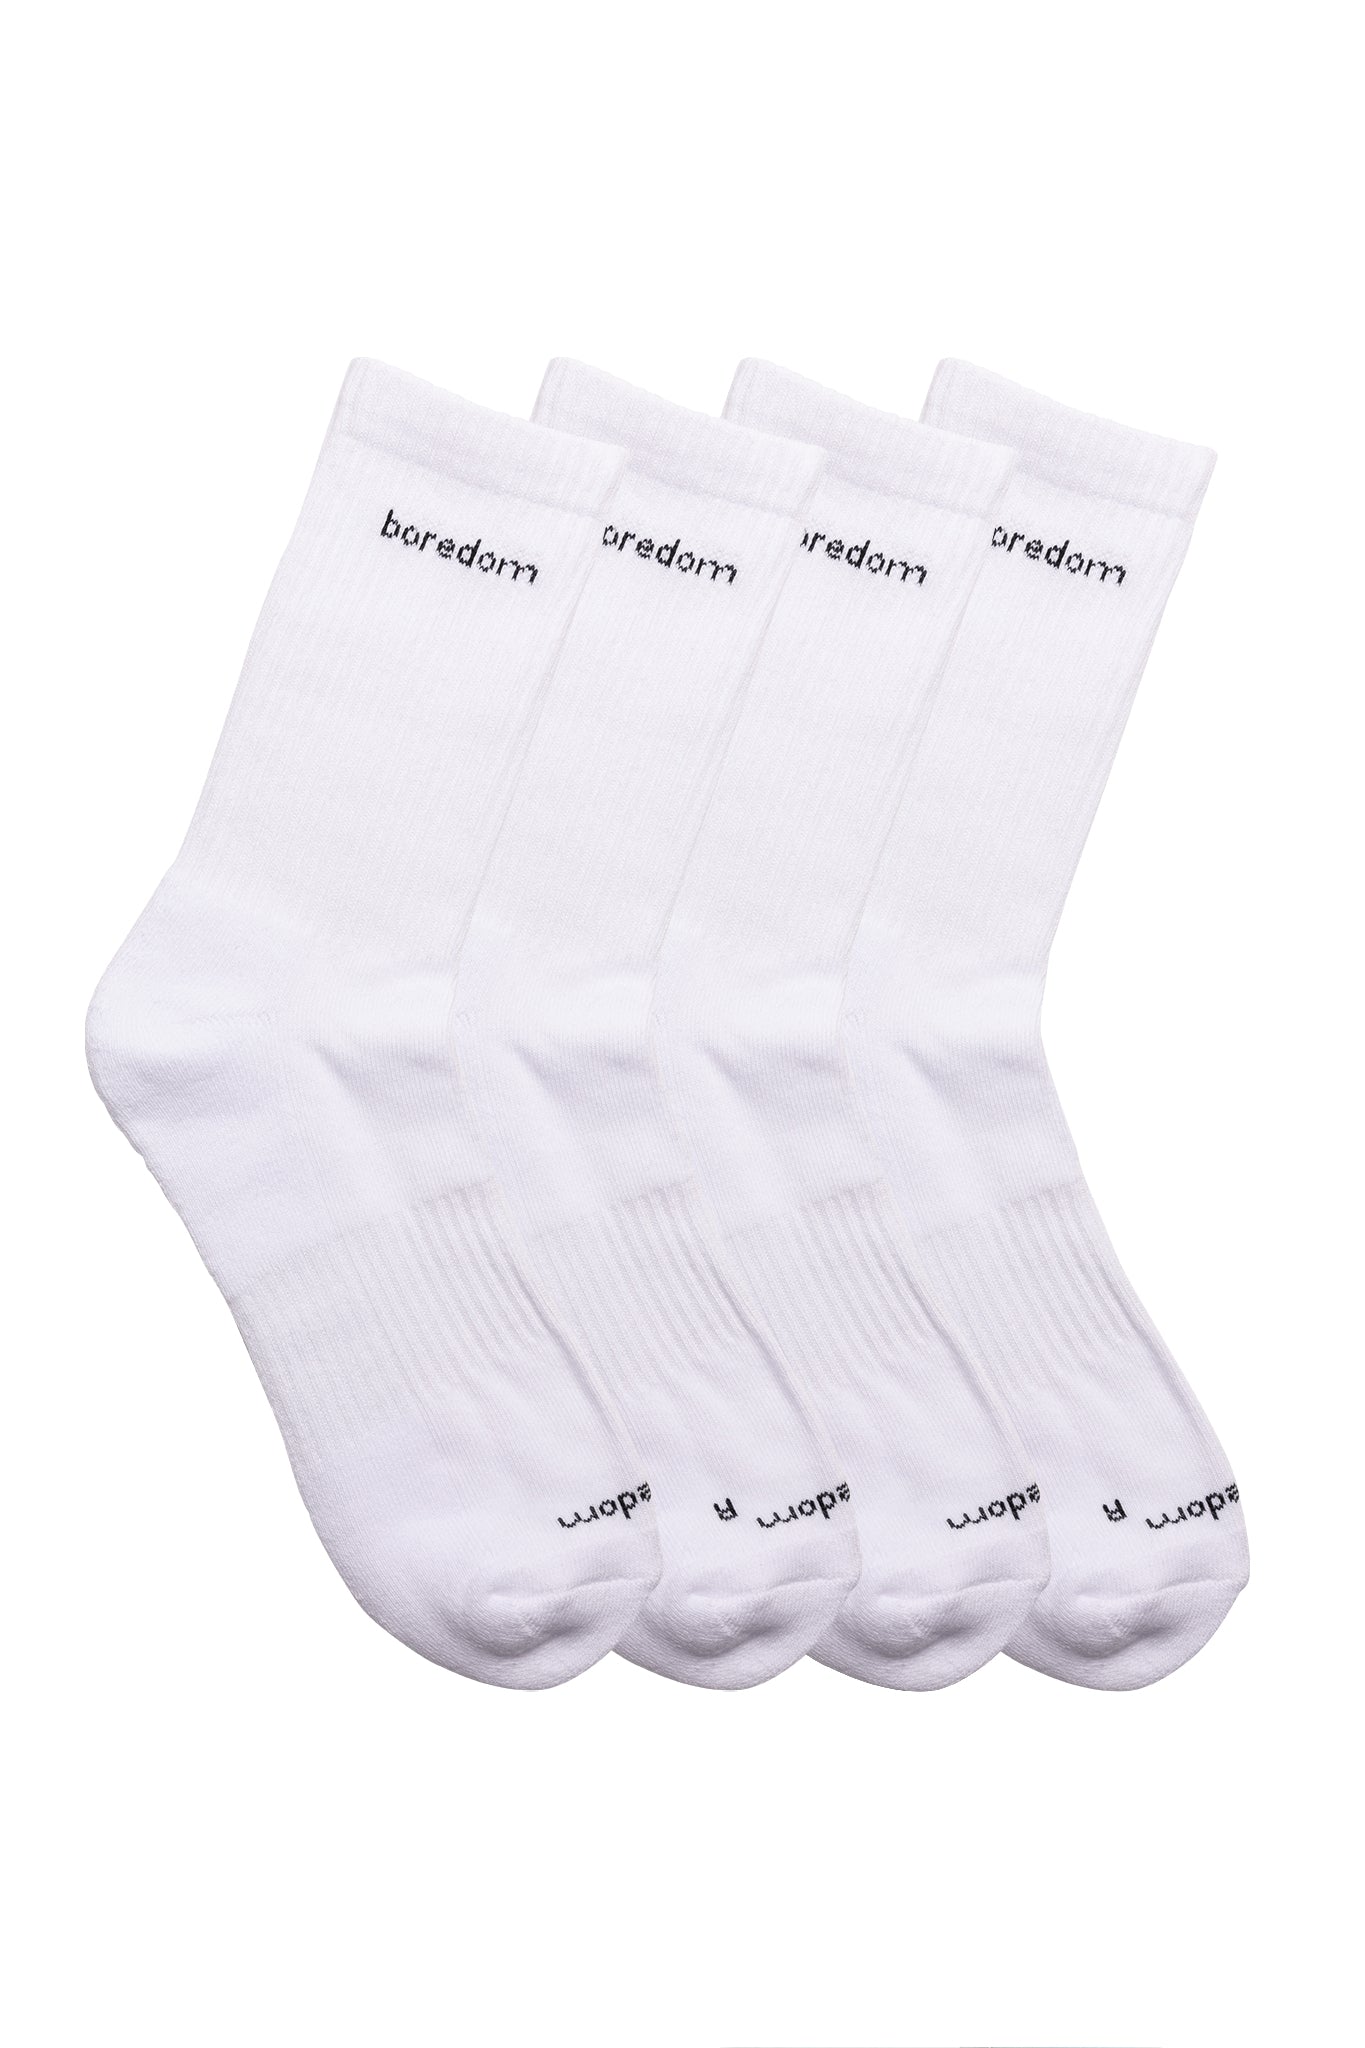 Word Mark 2-Pack of Socks - White